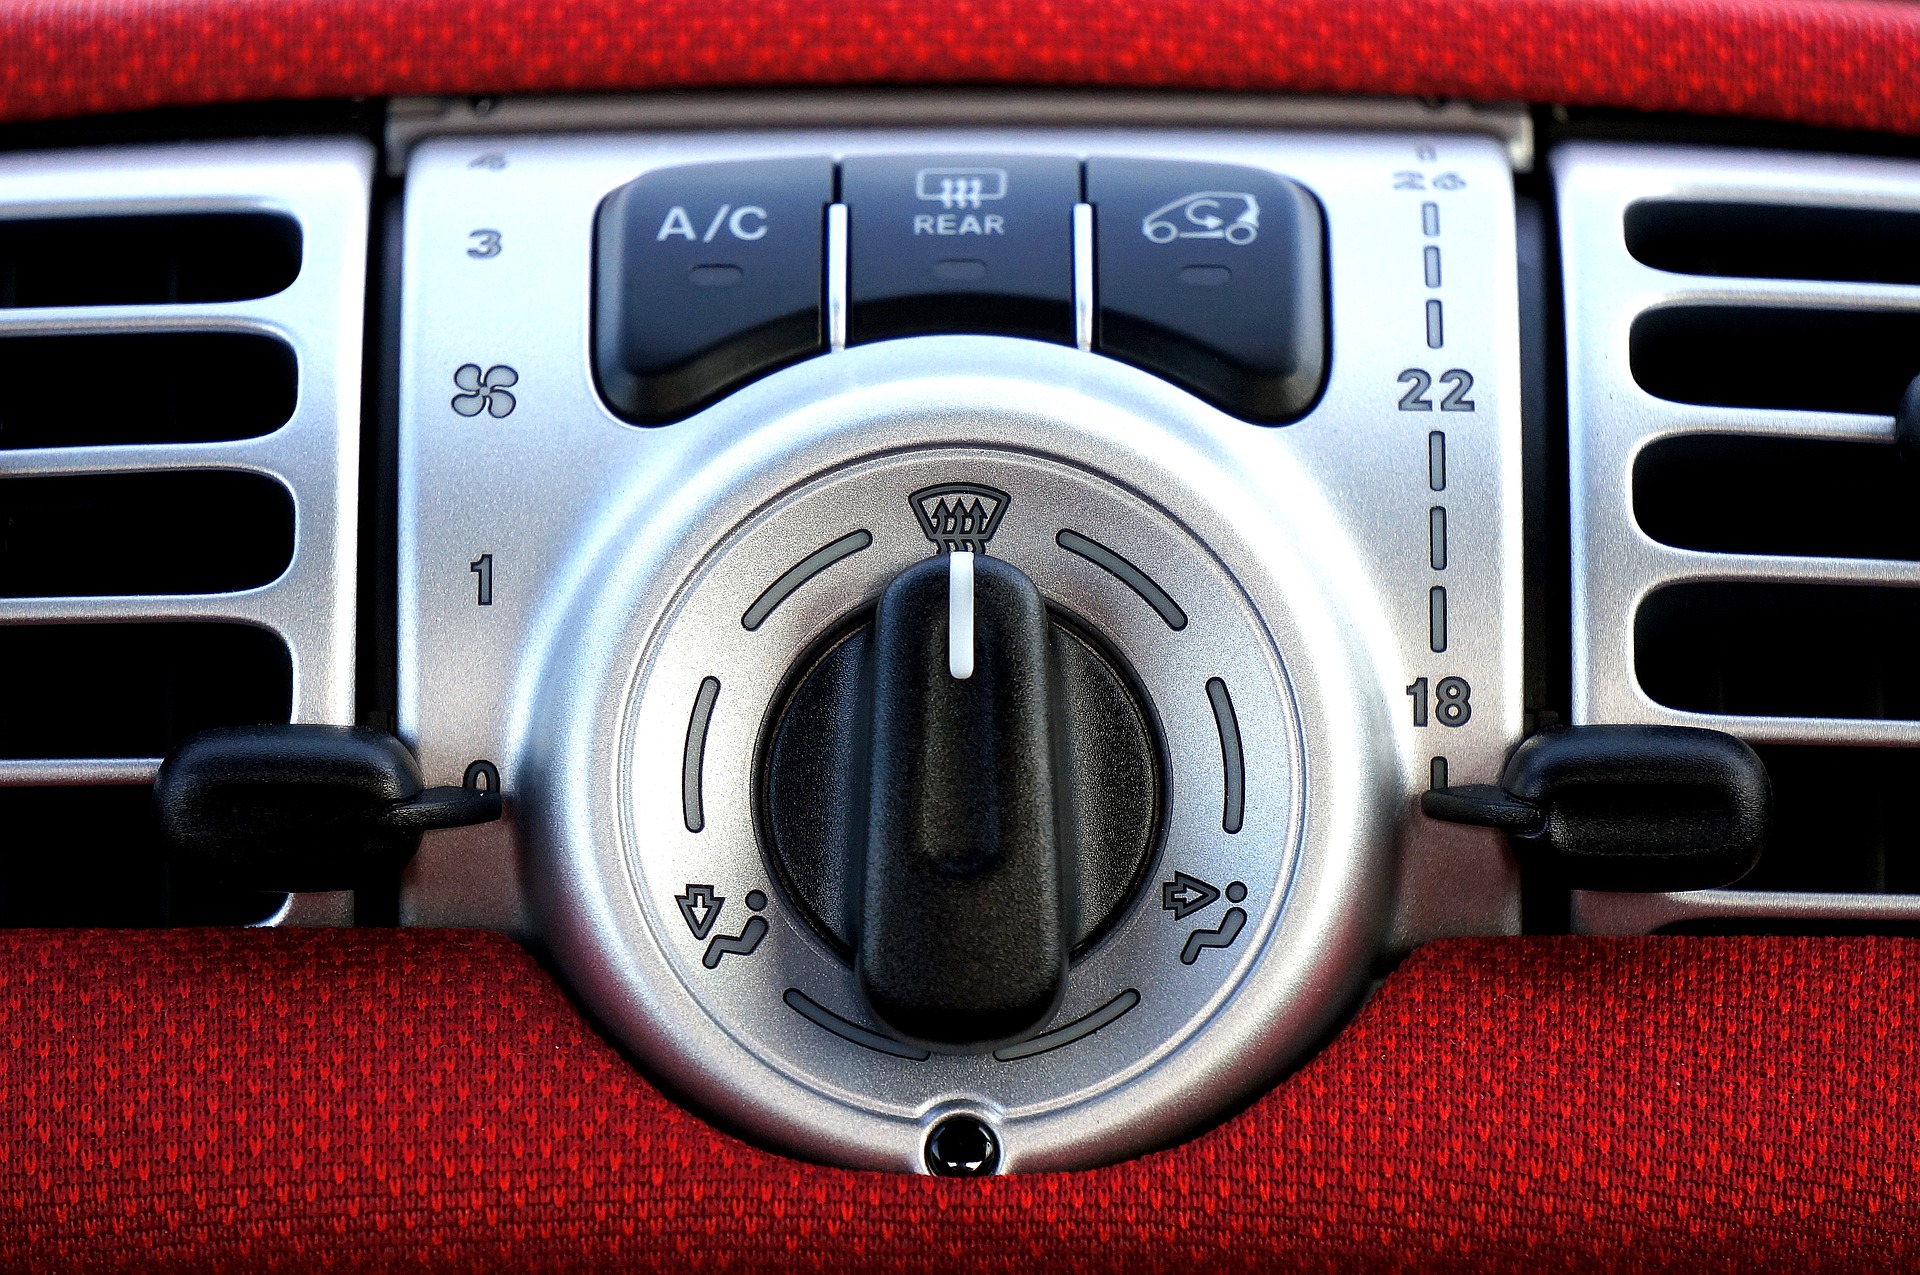 Foto do controle de ar-condicionado no carro. Imagem ilustrativa para o texto limpeza de ar condicionado.